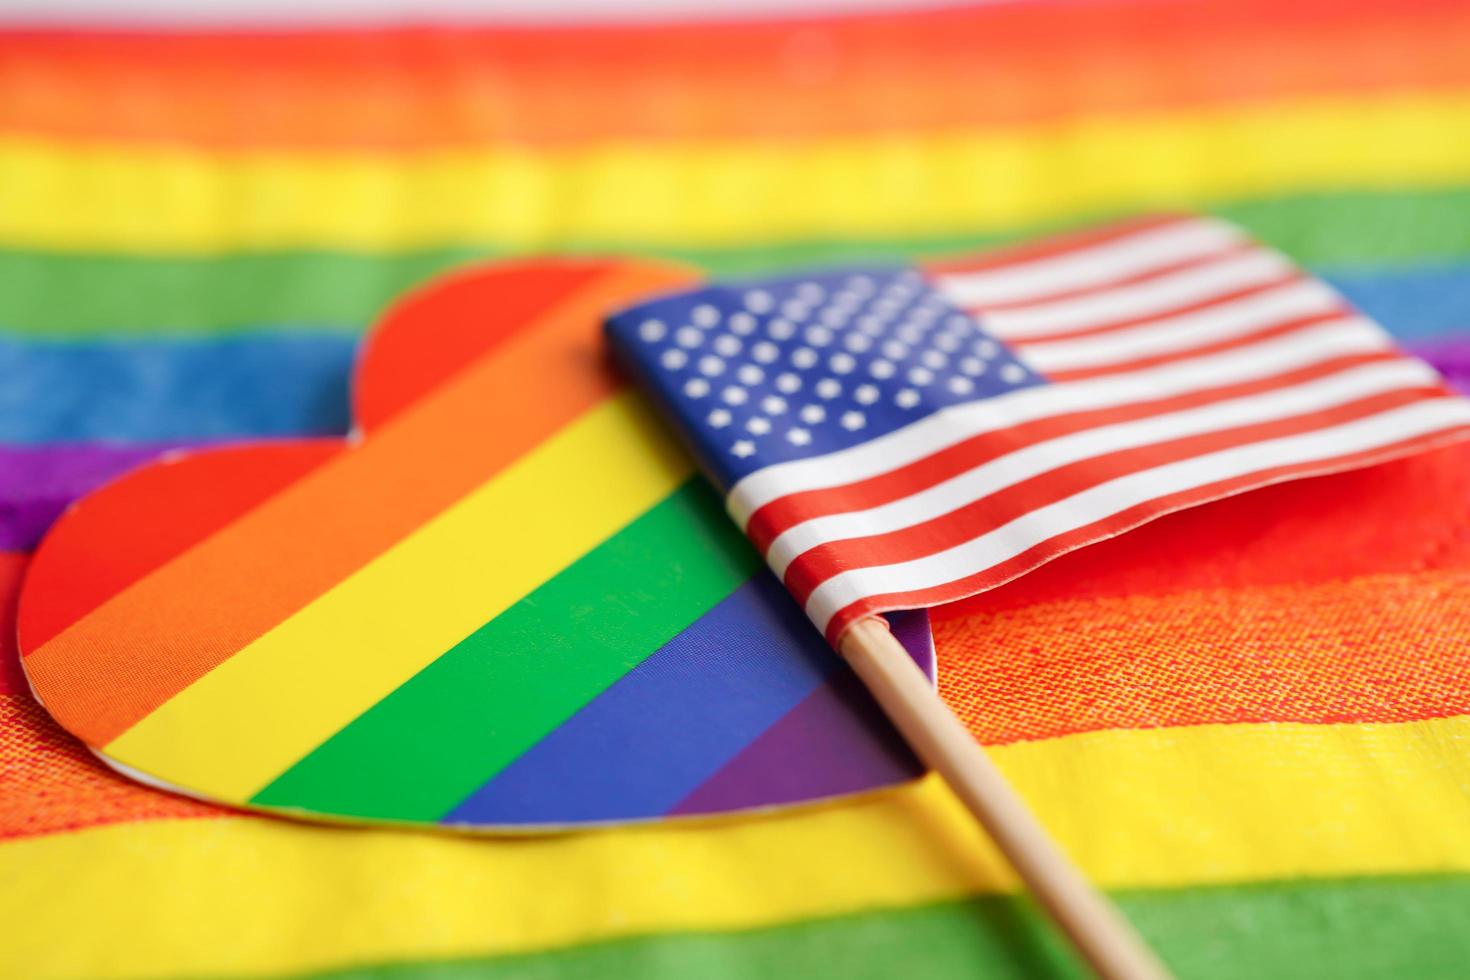 bandeira dos eua américa no fundo do arco-íris símbolo da bandeira do movimento social do mês do orgulho gay lgbt a bandeira do arco-íris é um símbolo de lésbicas, gays, bissexuais, transgêneros, direitos humanos, tolerância e paz. foto